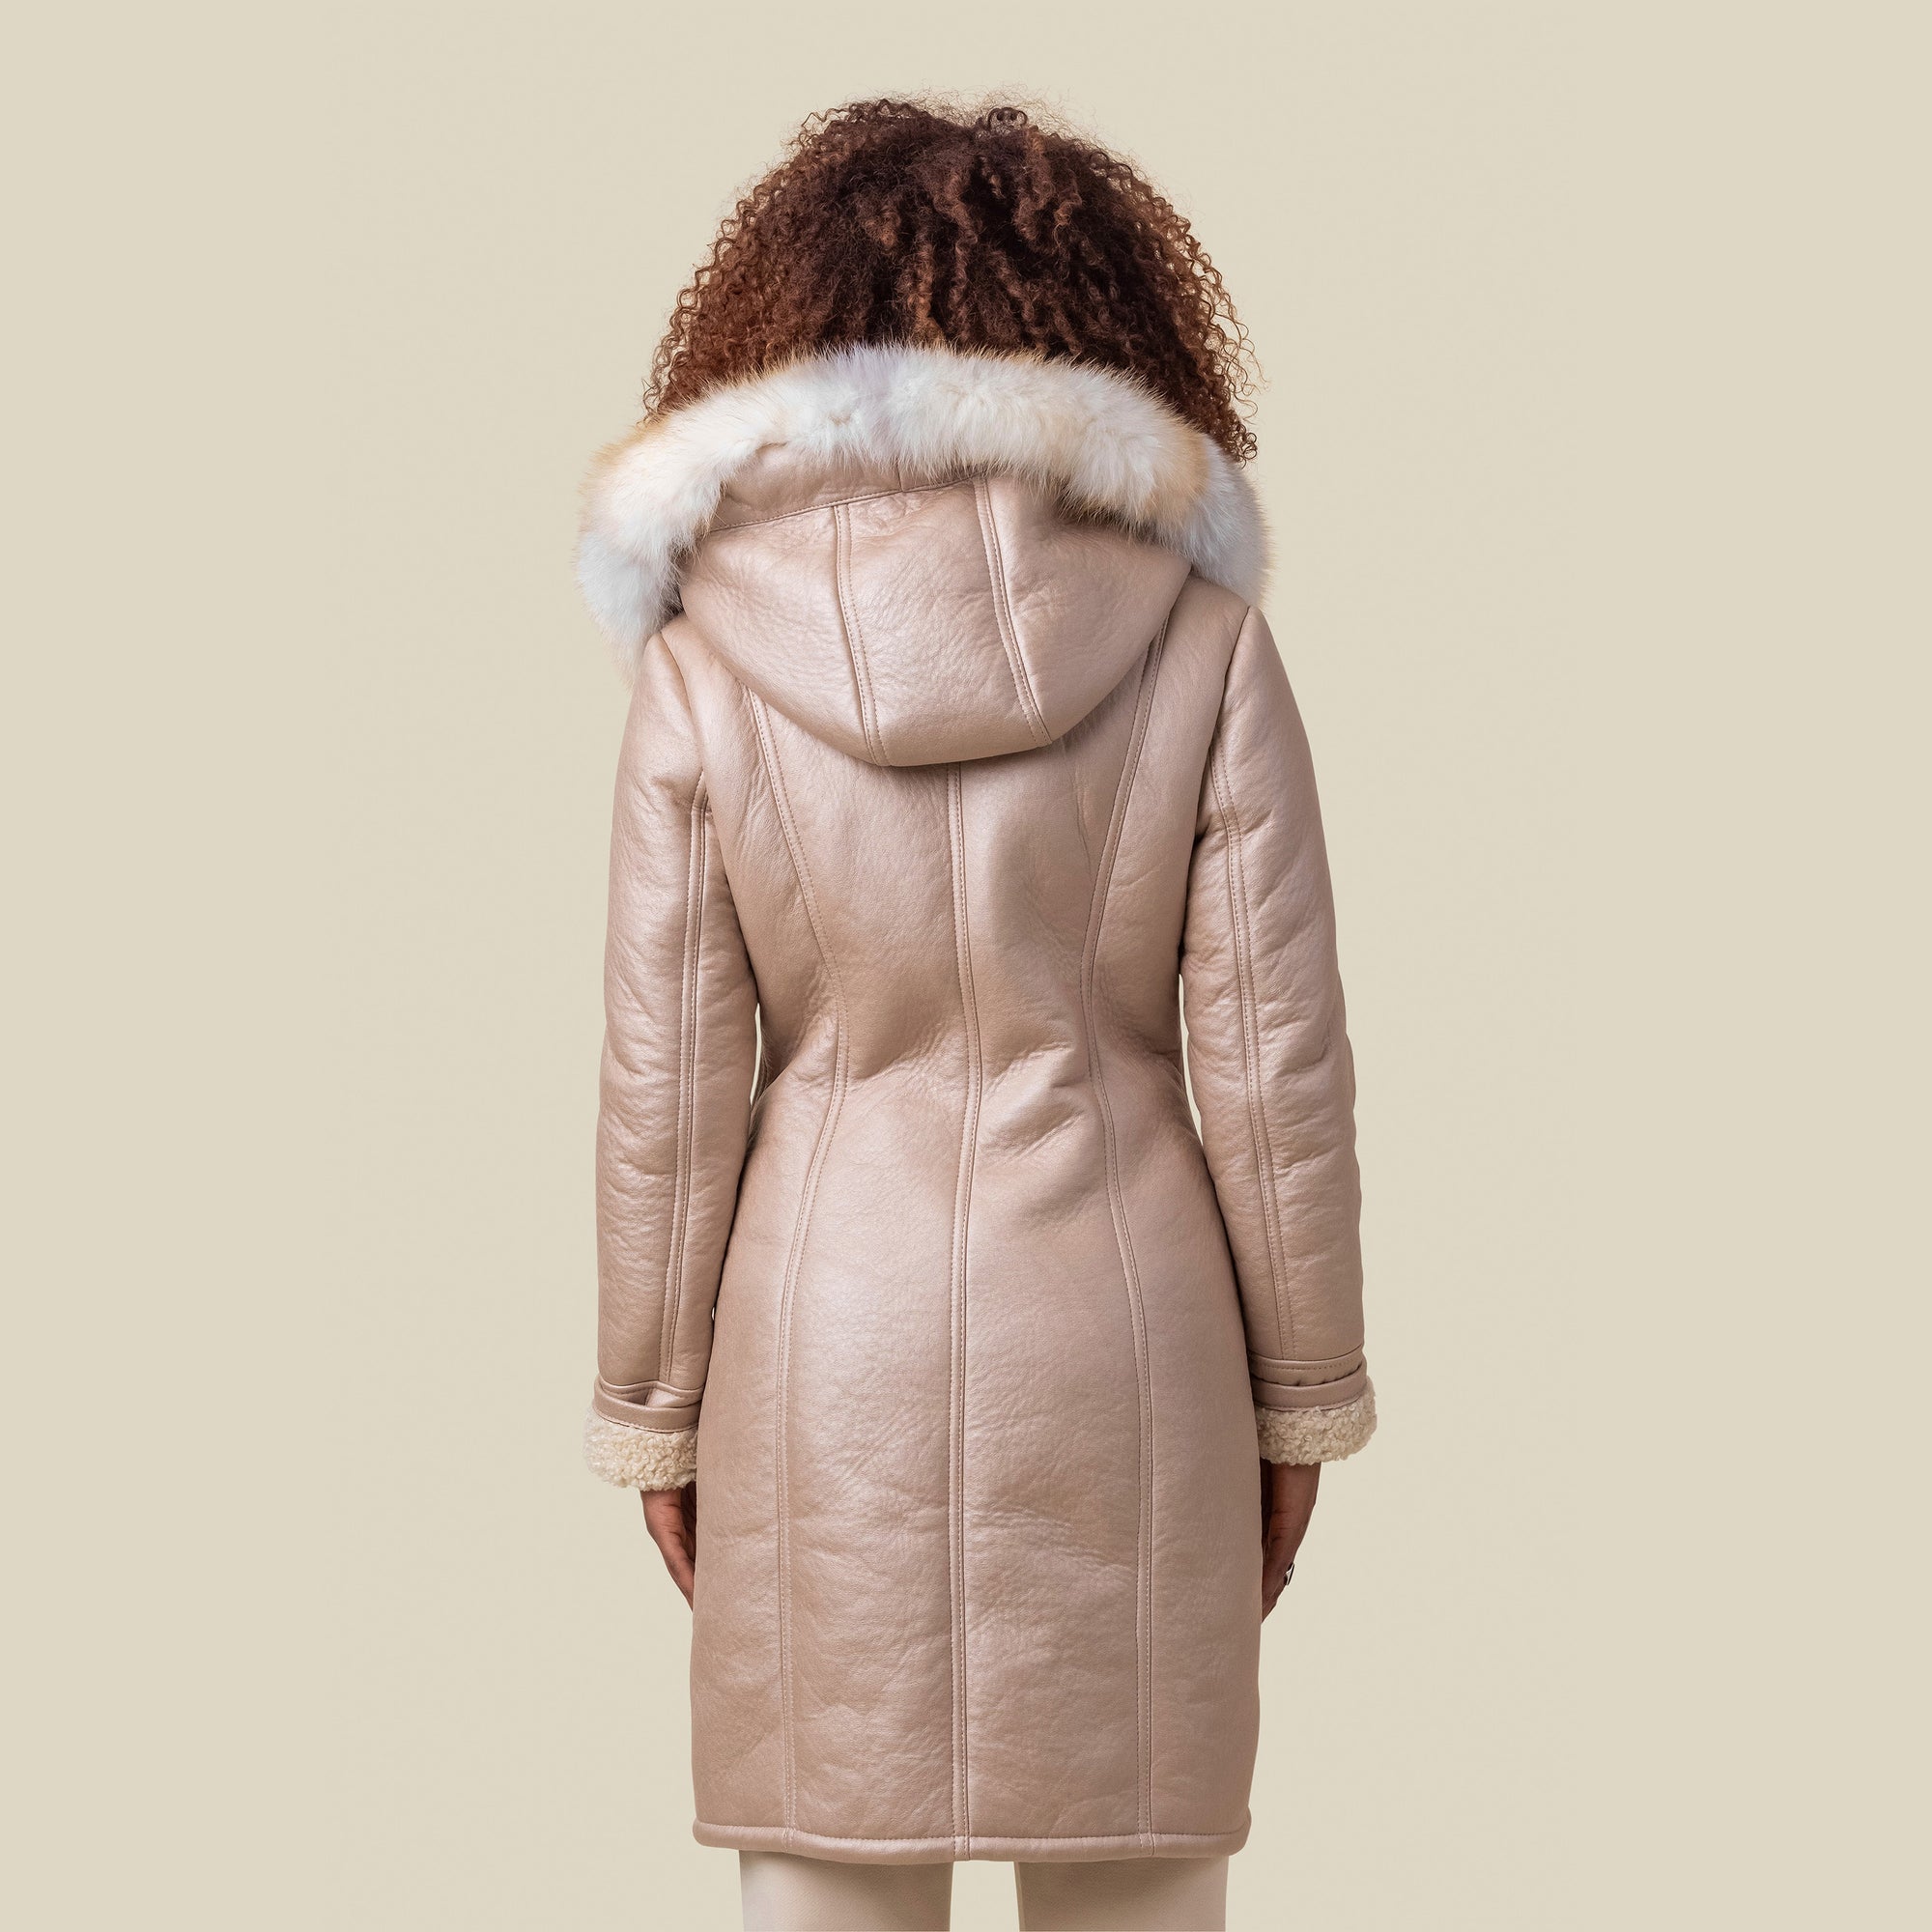 Adora Light Zip White Fur Coat Fox Hood - MarcoPolo NY